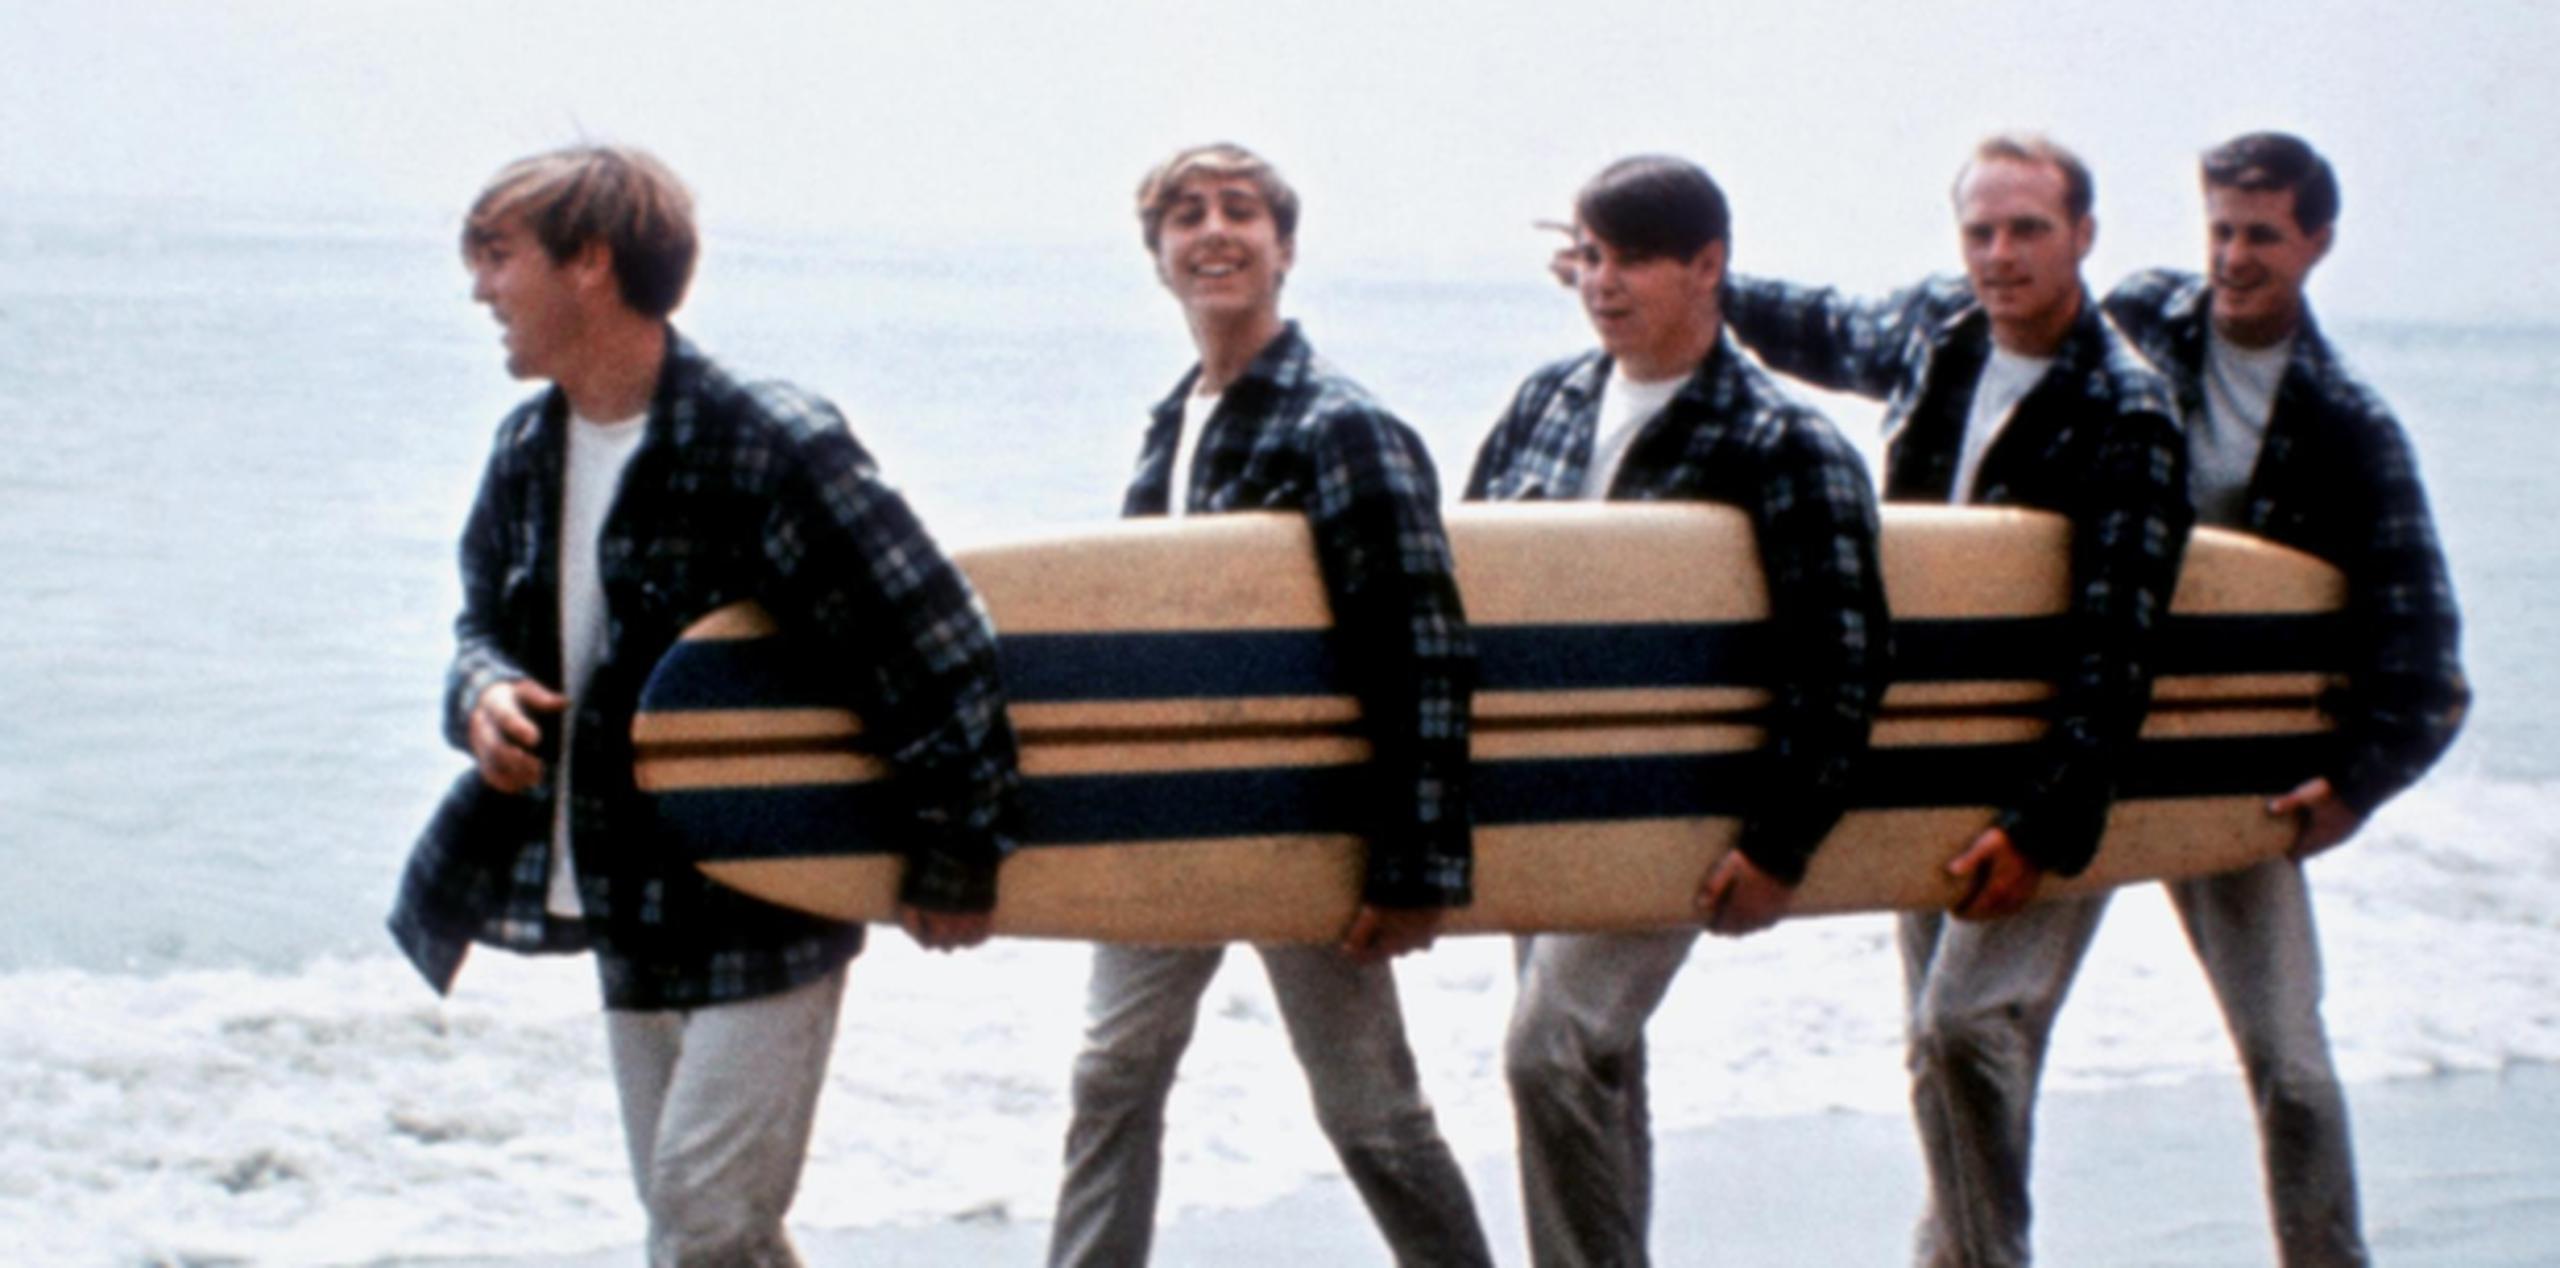 Los Beach Boys, en una imagen de su época de gloria, tocaban anoche cuando ocurrió el fenómeno atmosférico en Oklahoma. (AP)